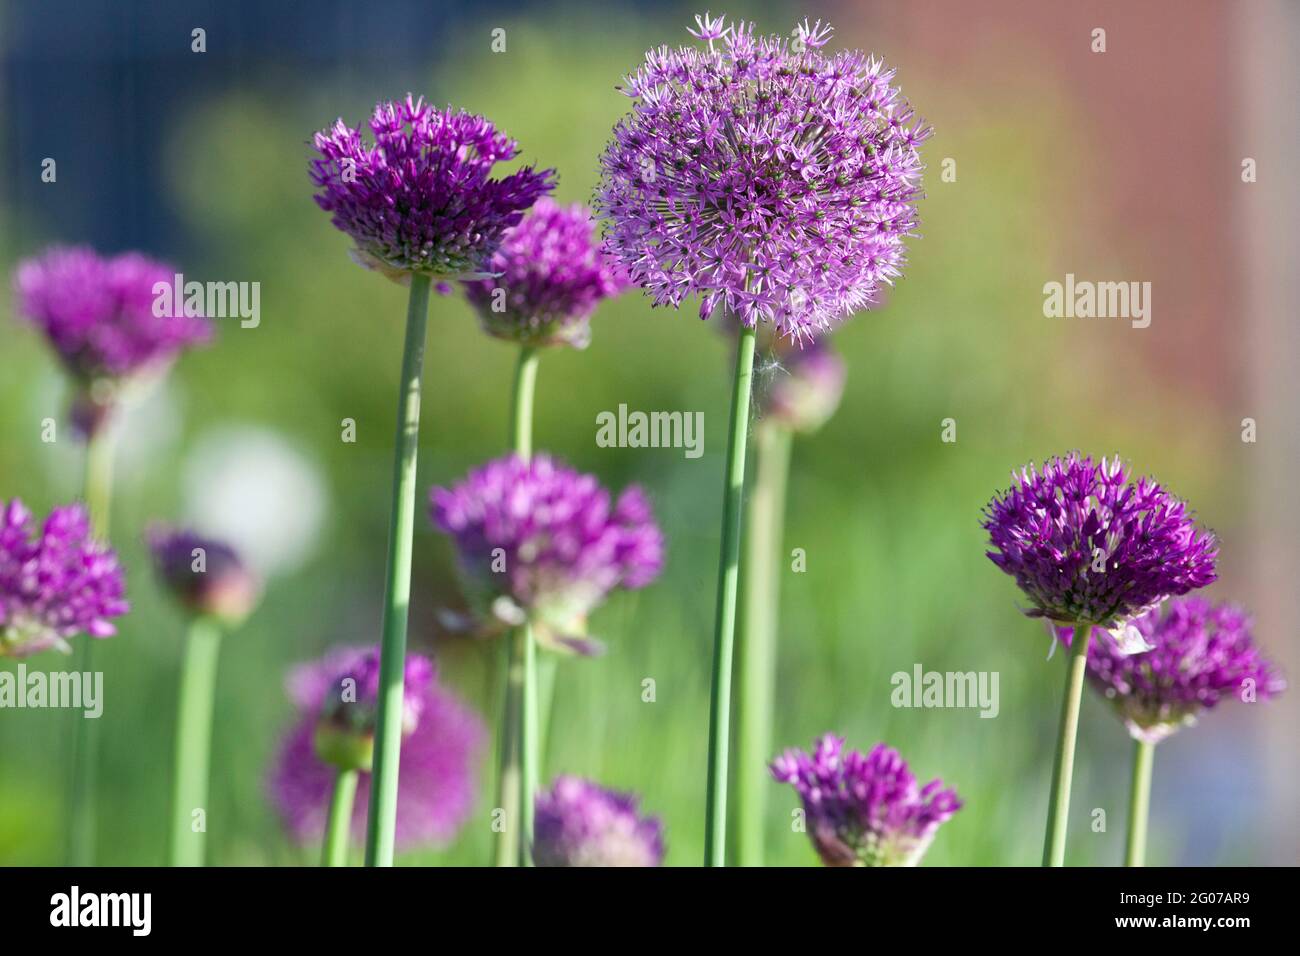 Henley-on-Thames, Reino Unido: Alliums de la sensación púrpura que crecen en ollas en una terraza de la azotea a principios del sol del verano. Anna Watson/Alamy Foto de stock